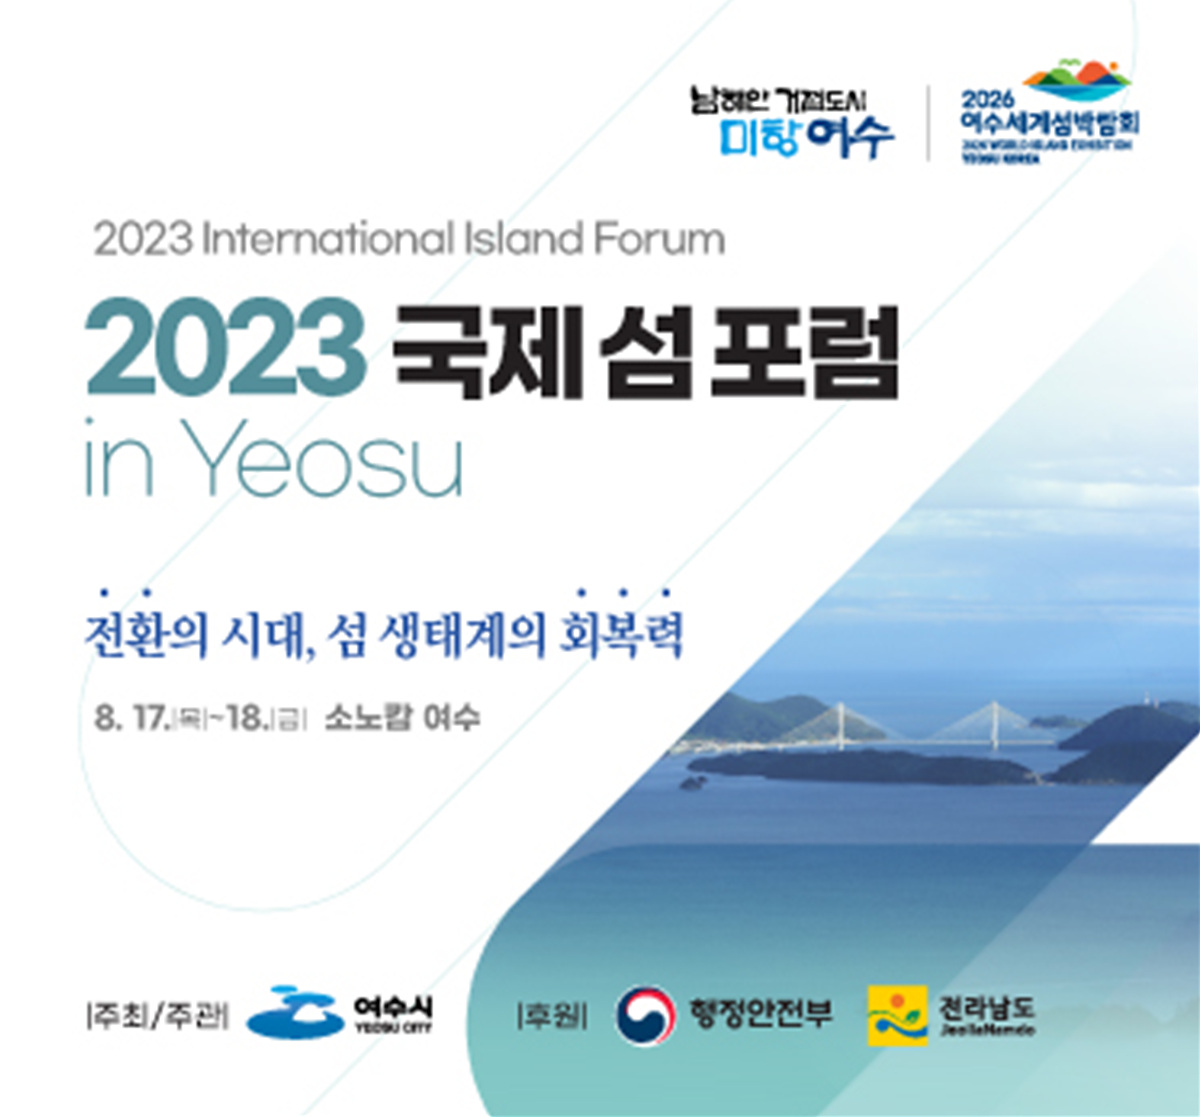 ▲'2023 국제 섬 포럼 in Yeosu' 포스터